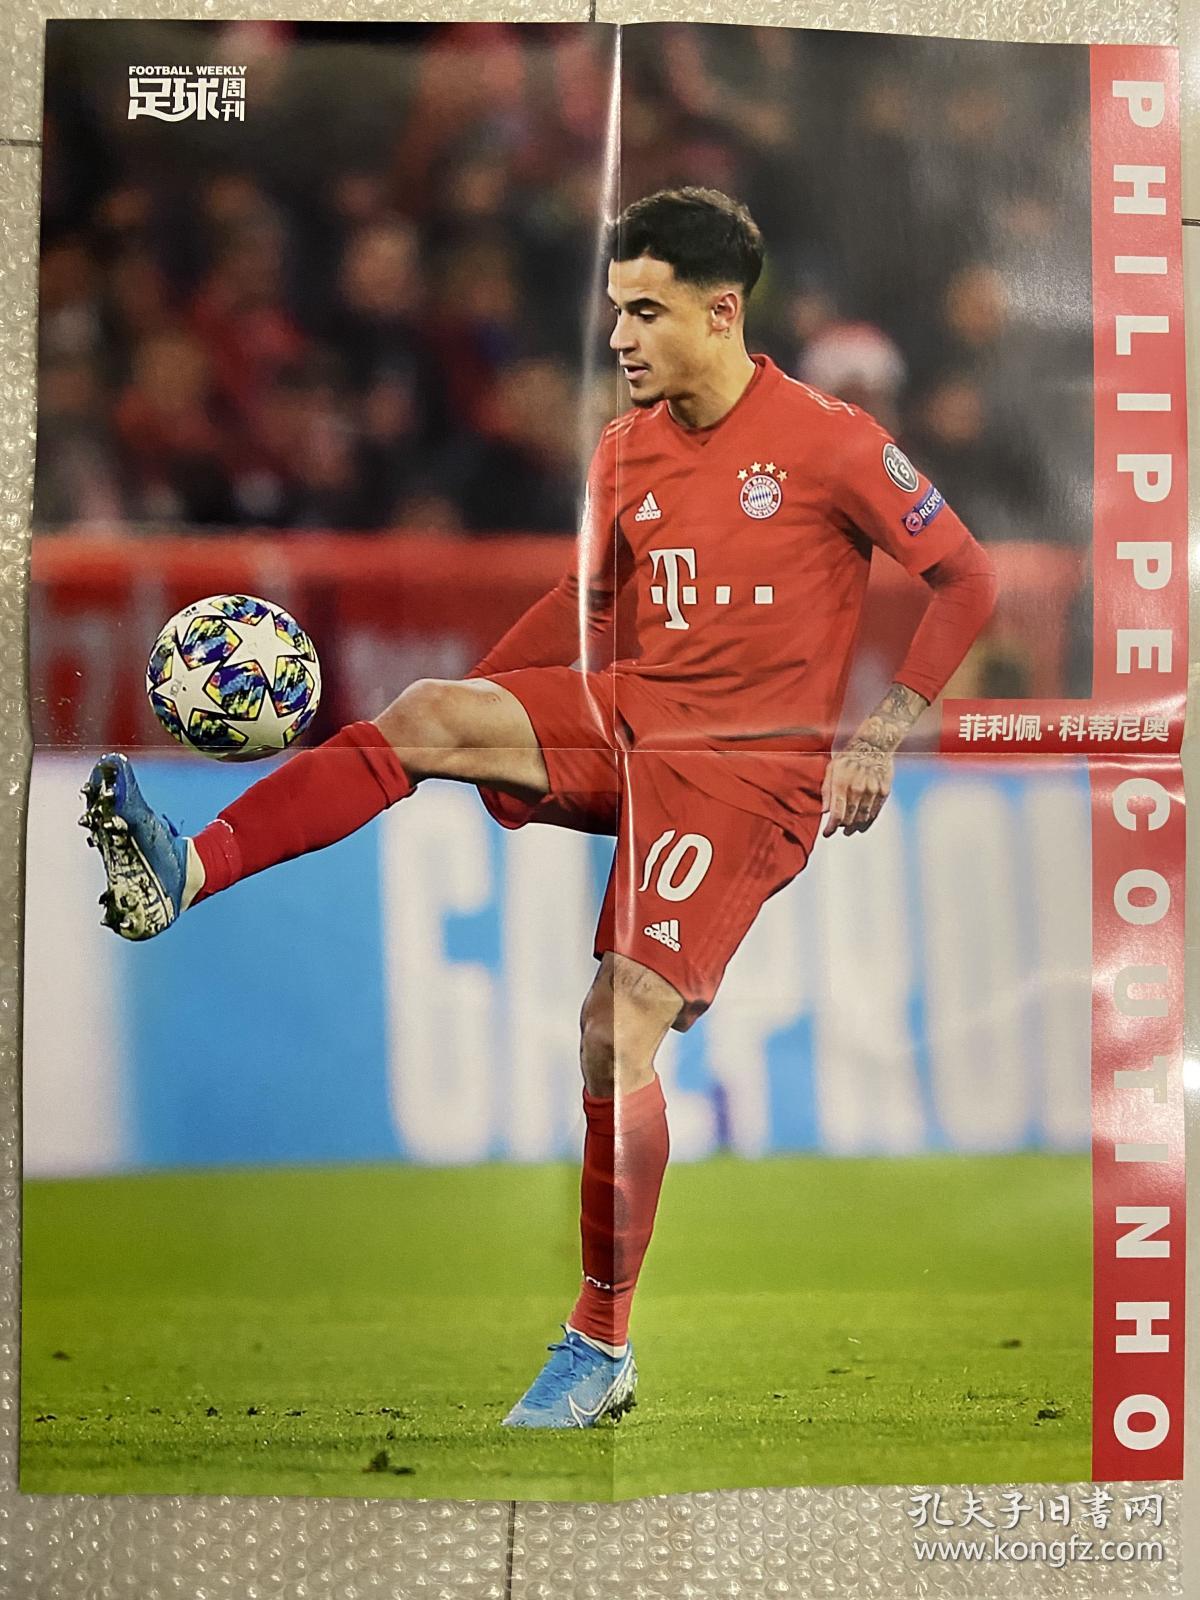 足球周刊 No.778 2019.12 库蒂尼奥（拜仁）维尔纳（莱比锡） 海报